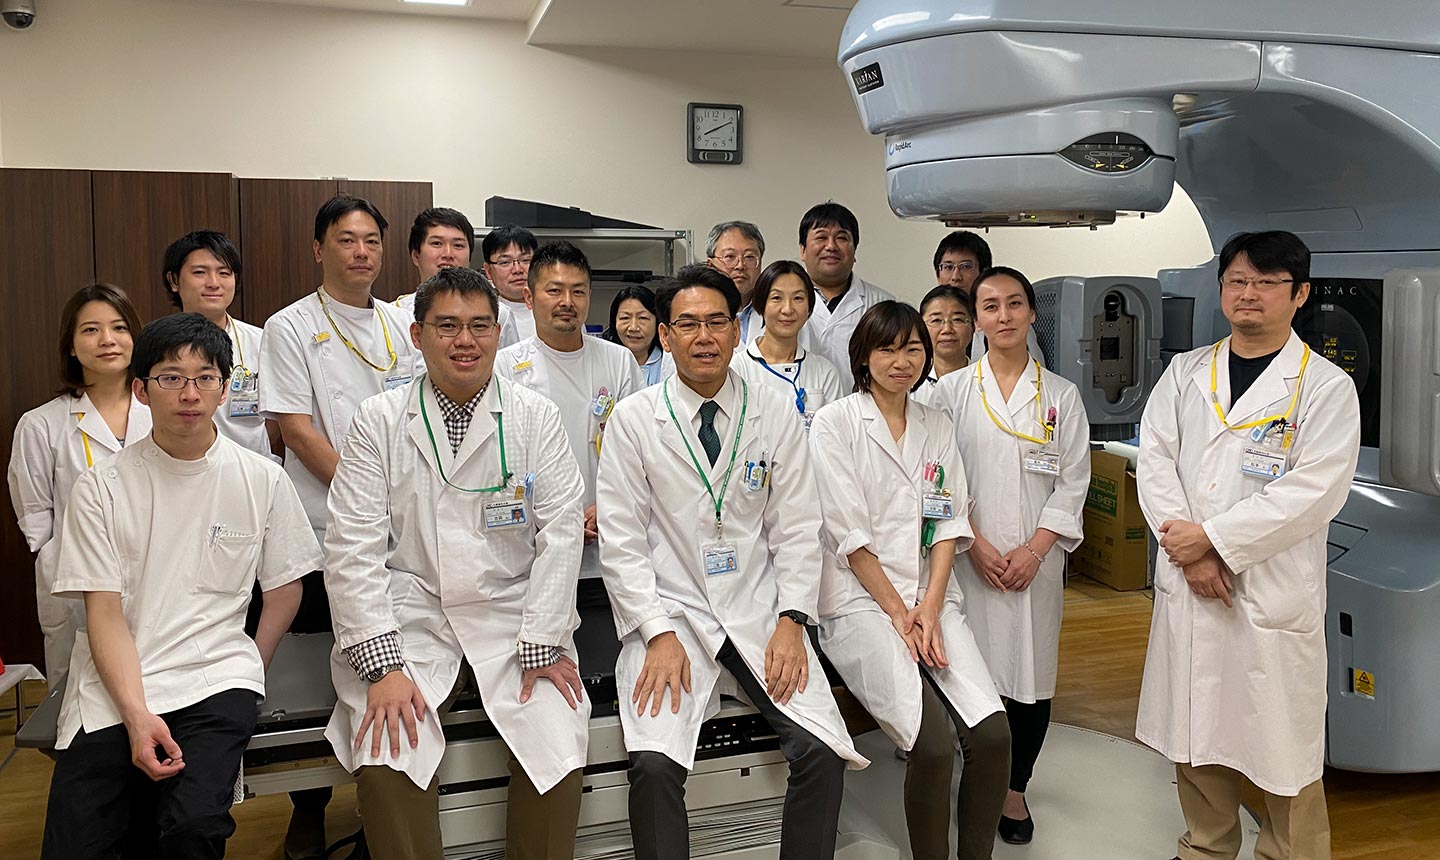 放射線診腫瘍学教室集合写真